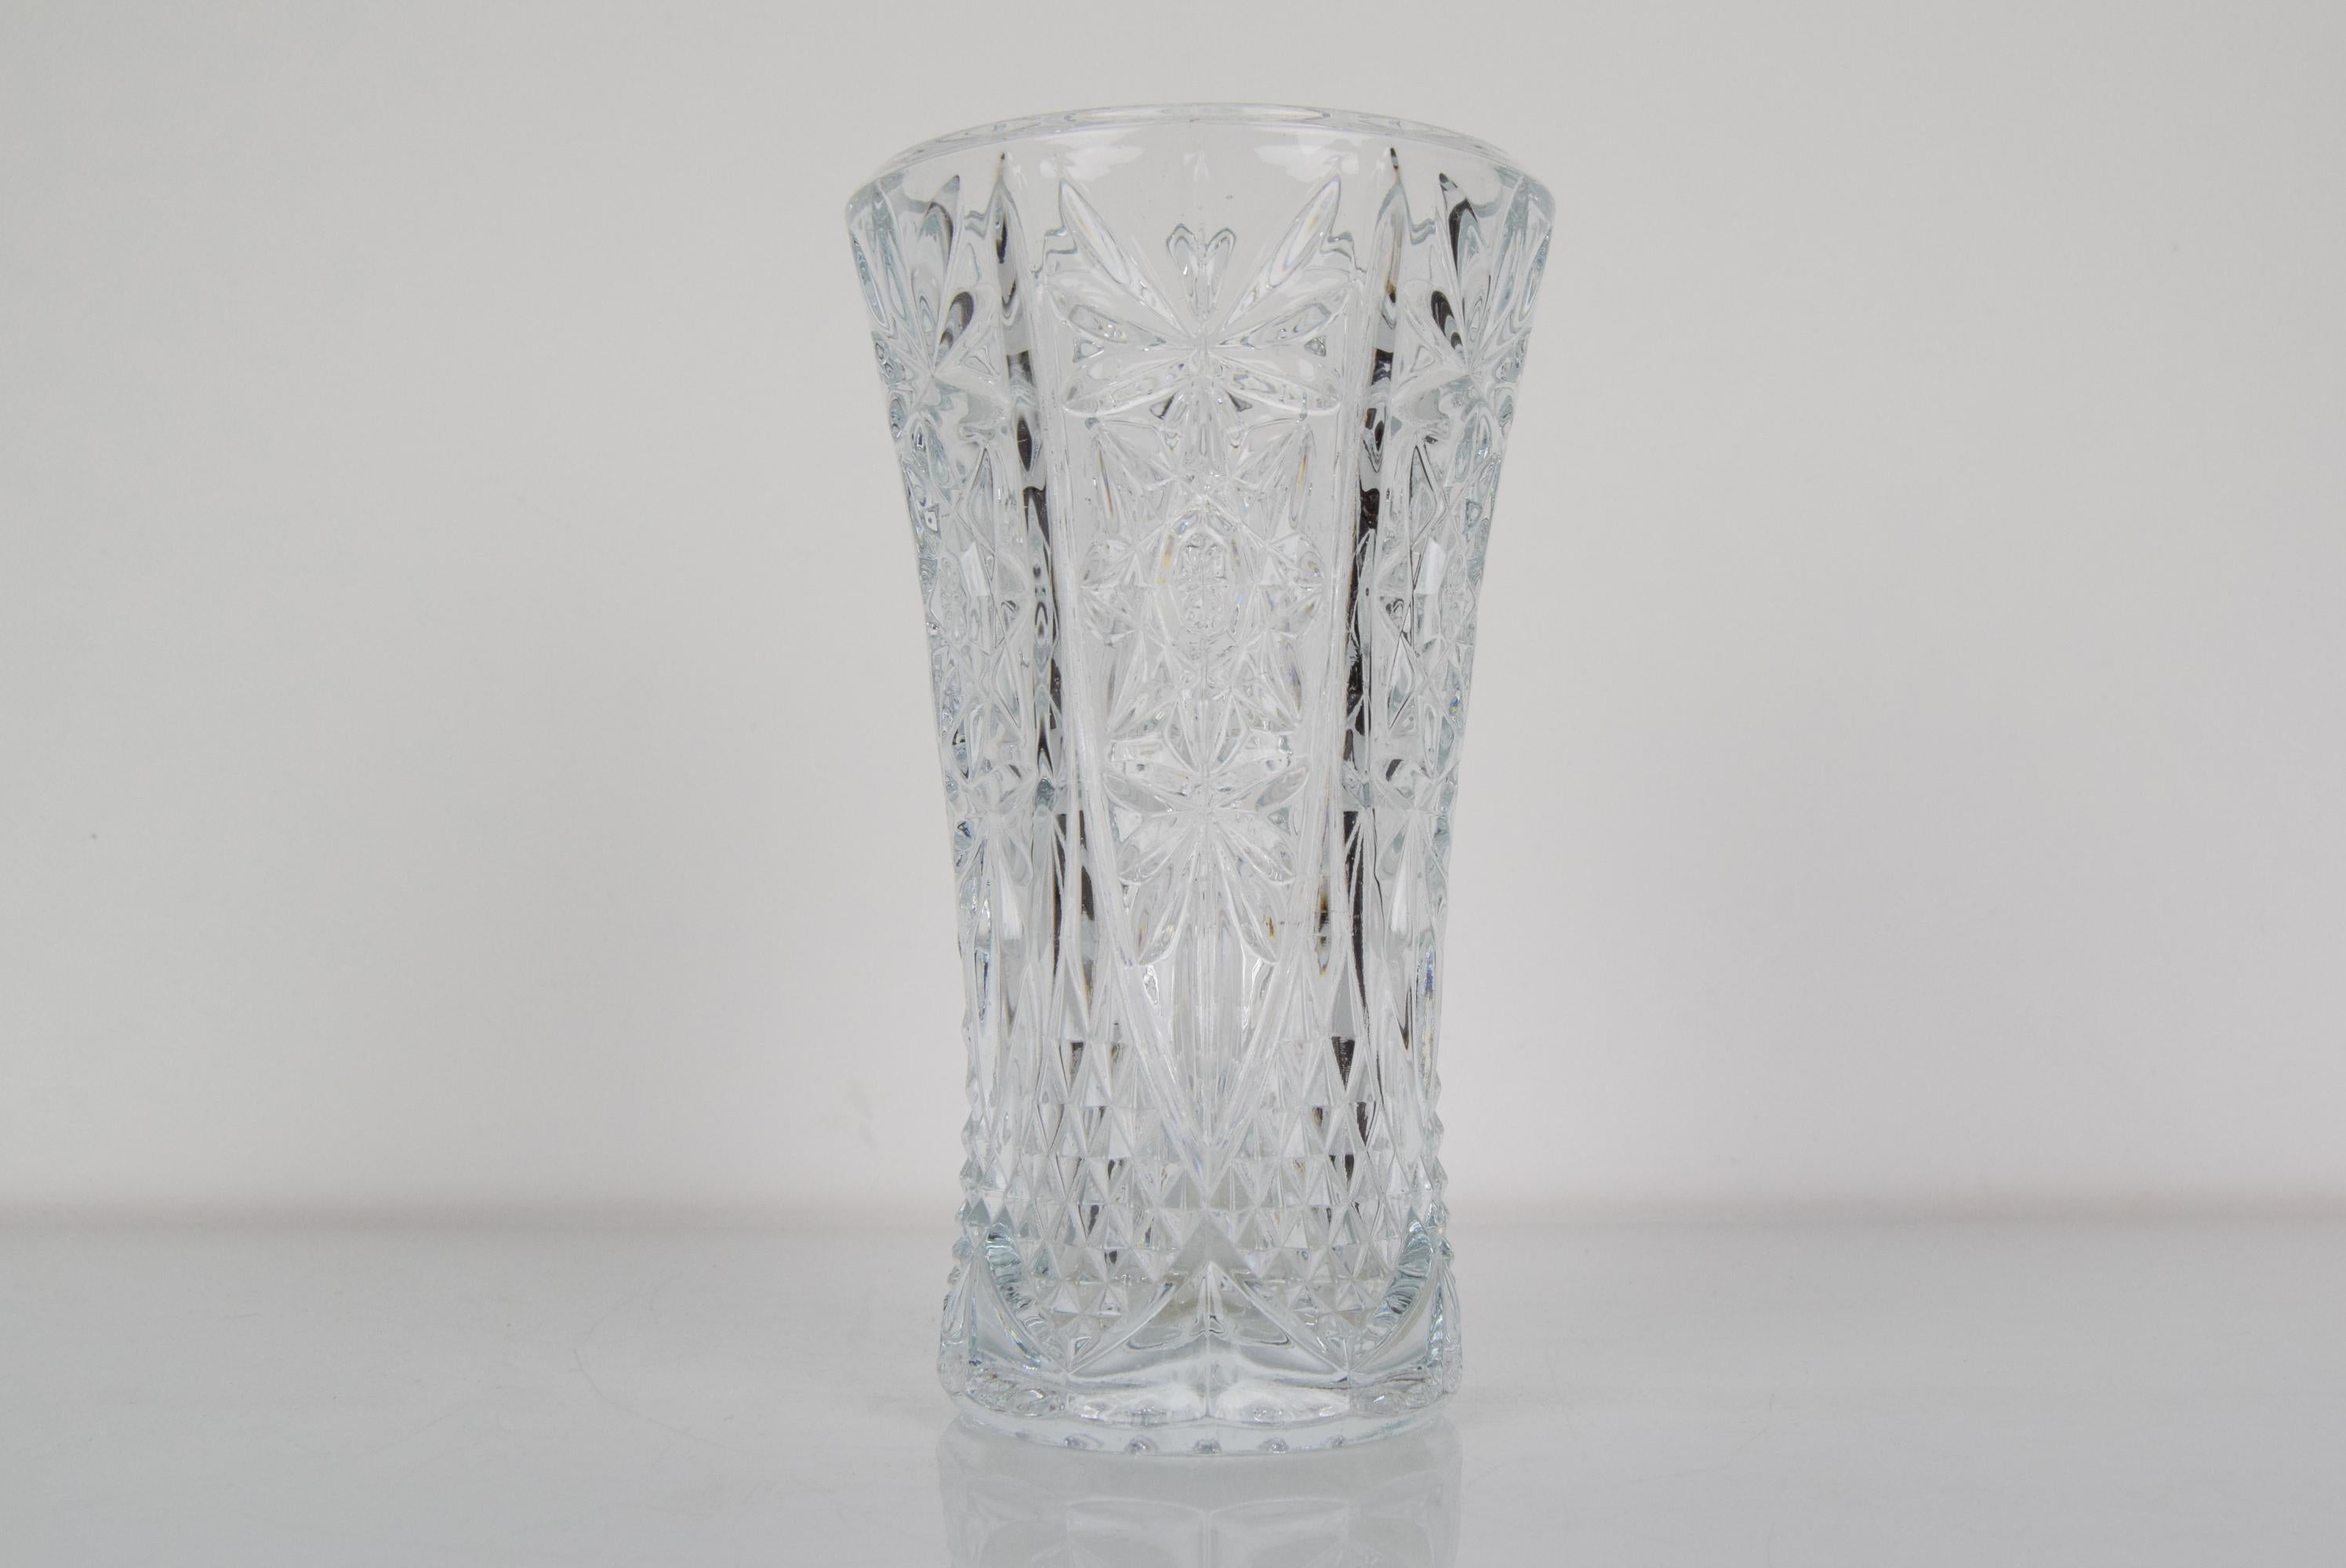 Fabriqué en Tchécoslovaquie
Fabriqué en verre de cristal
Re-polissage
État original.